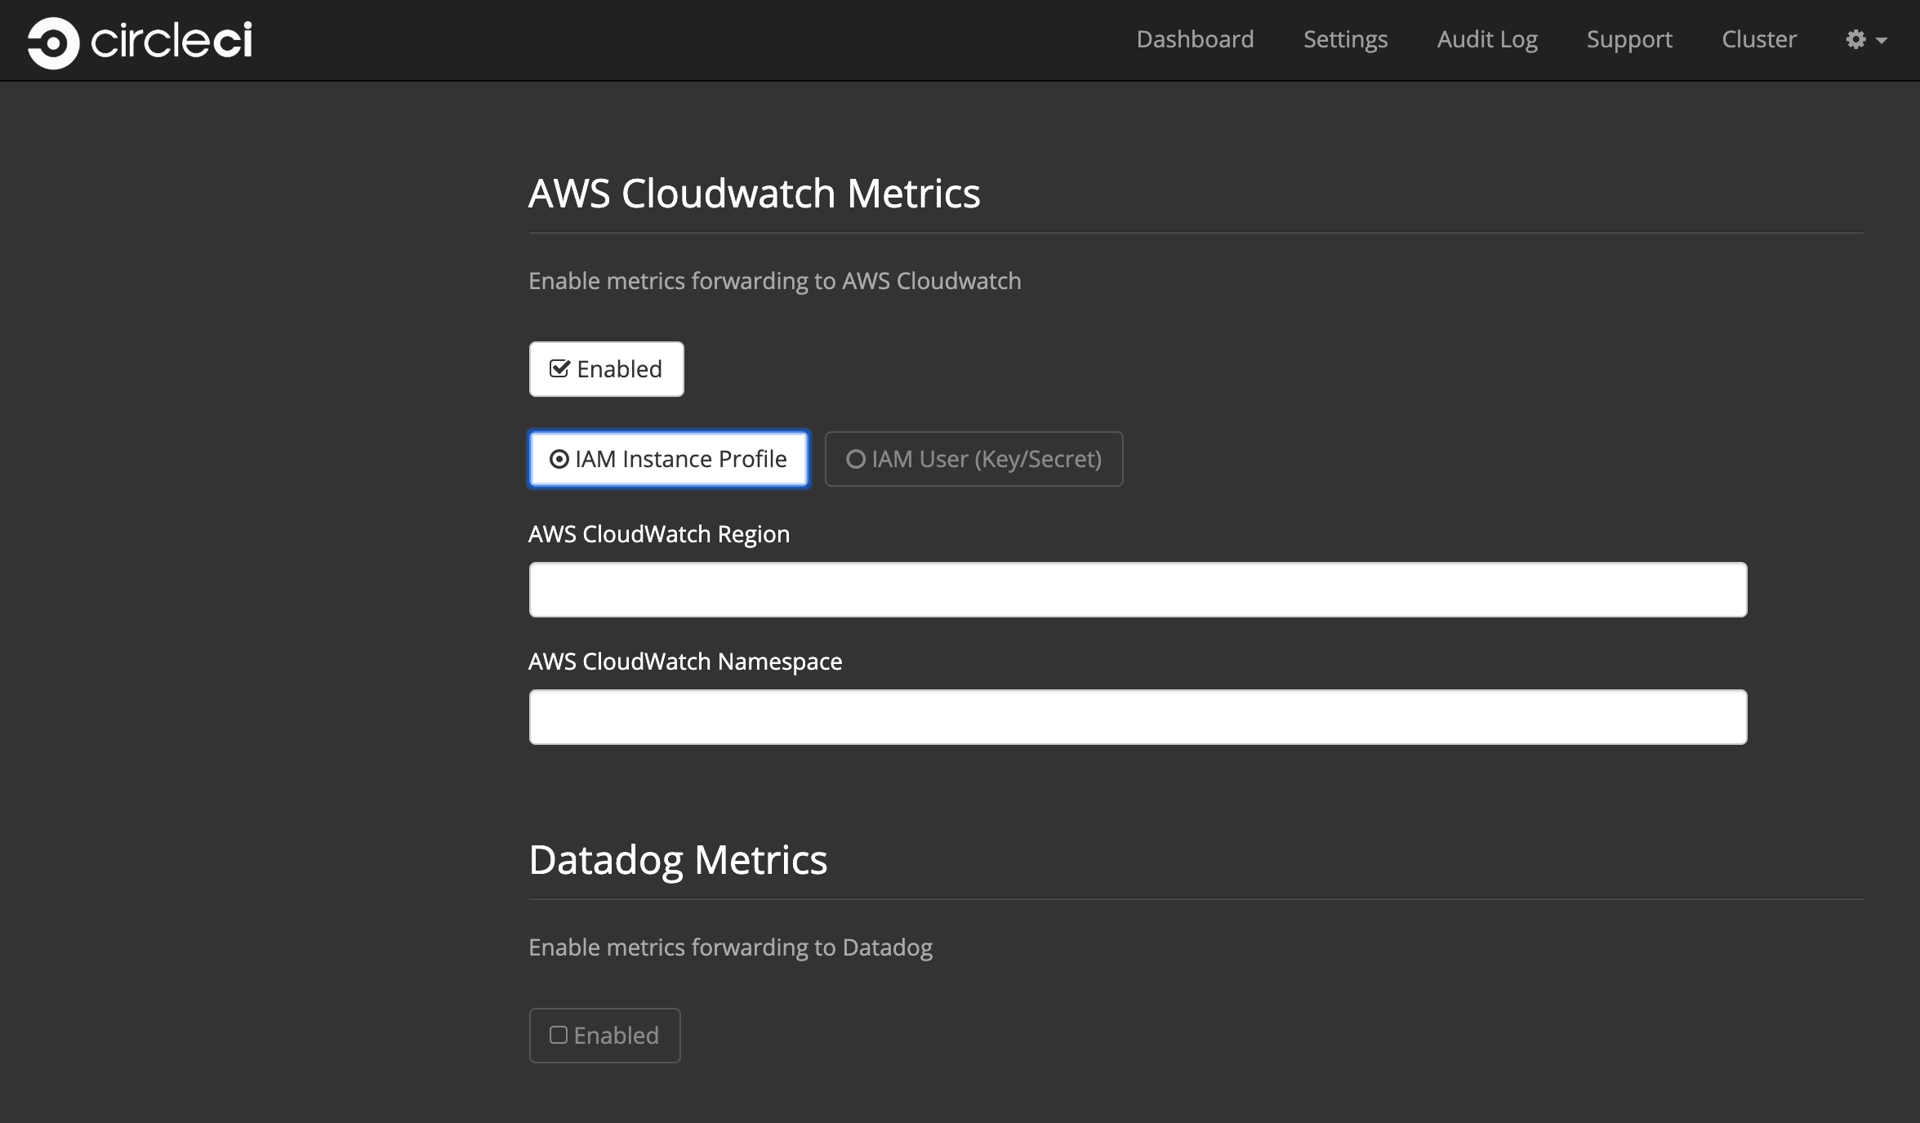 AWS Cloudwatch and Datadog metrics